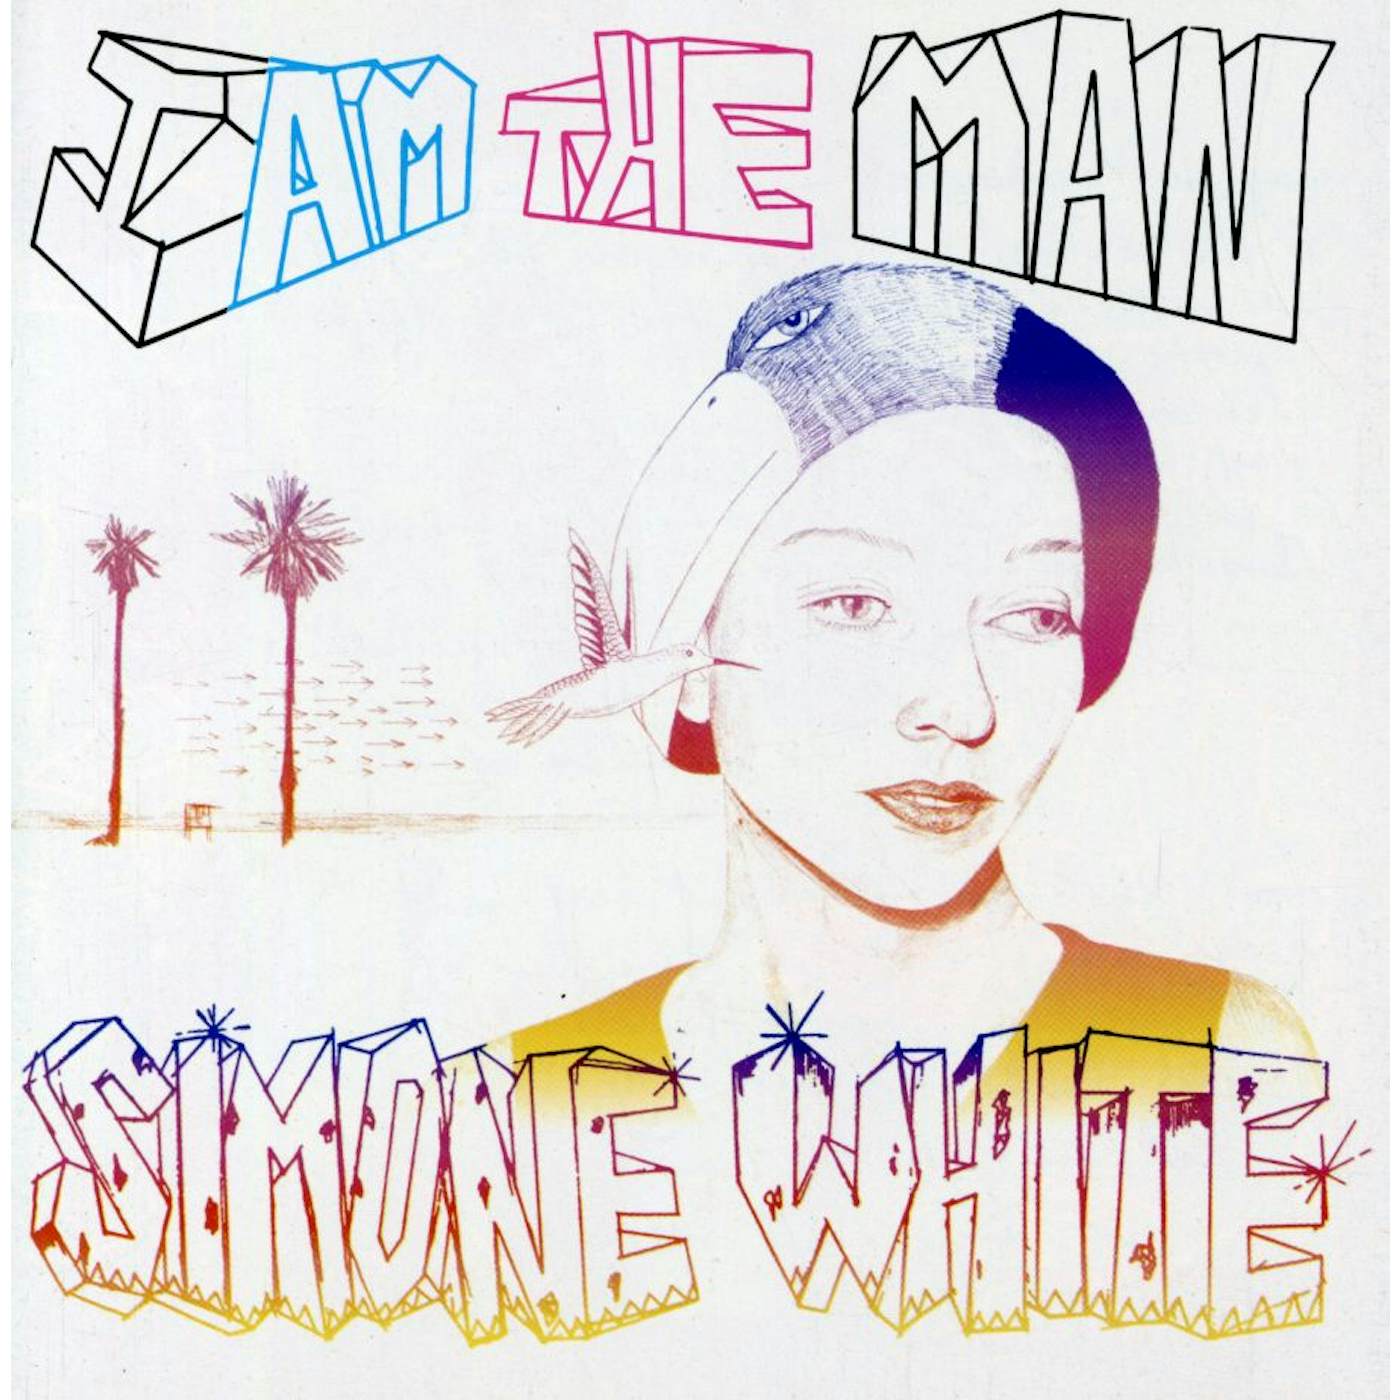 Simone White I AM THE MAN CD